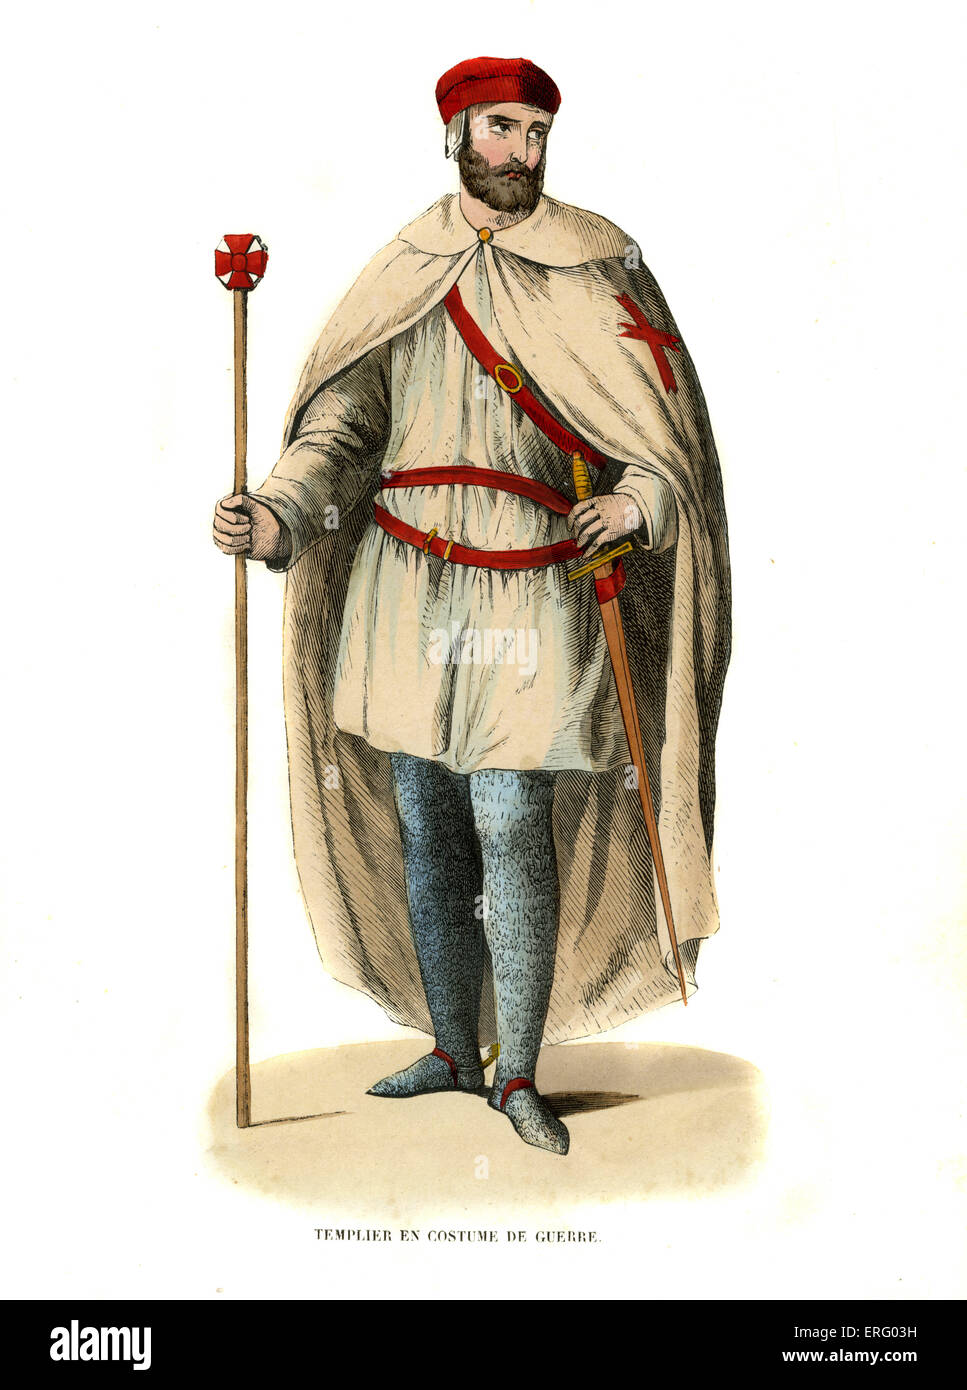 Templier en costume militaire. L'ordre militaire médiévale chrétienne active dans les croisades, du début jusqu'à la 1100s Banque D'Images